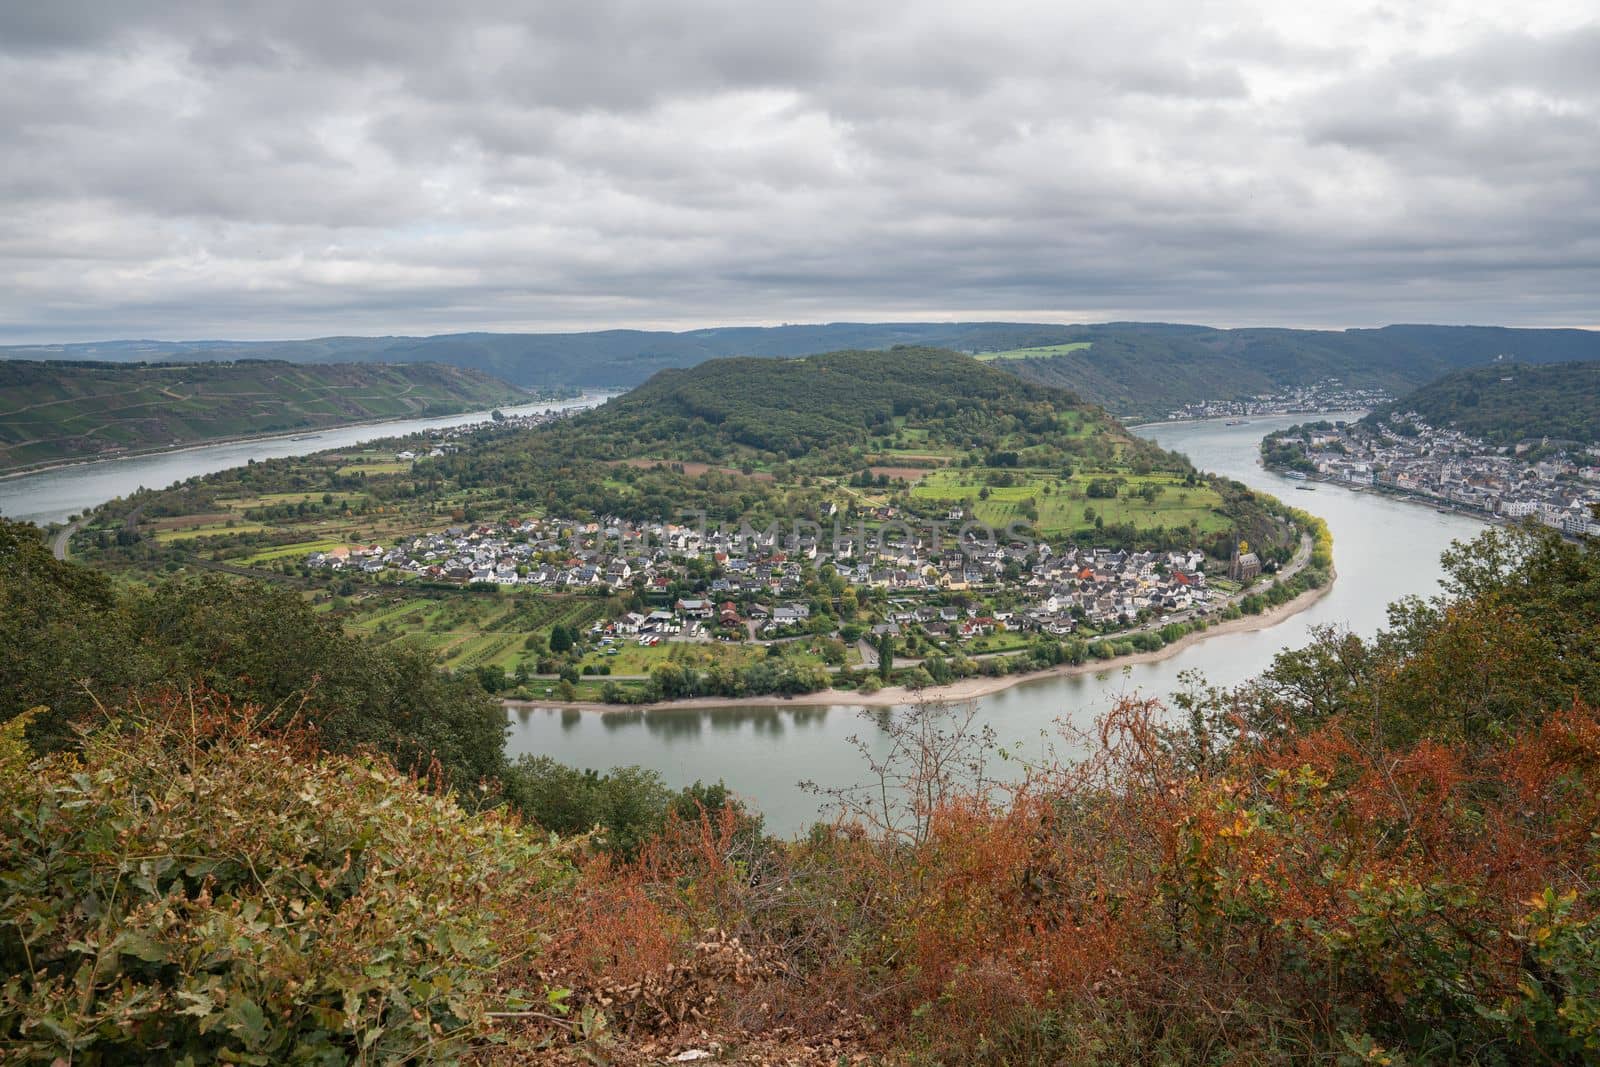 Rhine river loop, Boppard, Rhine Valley, Rhineland-Palatinate, Germany by alfotokunst